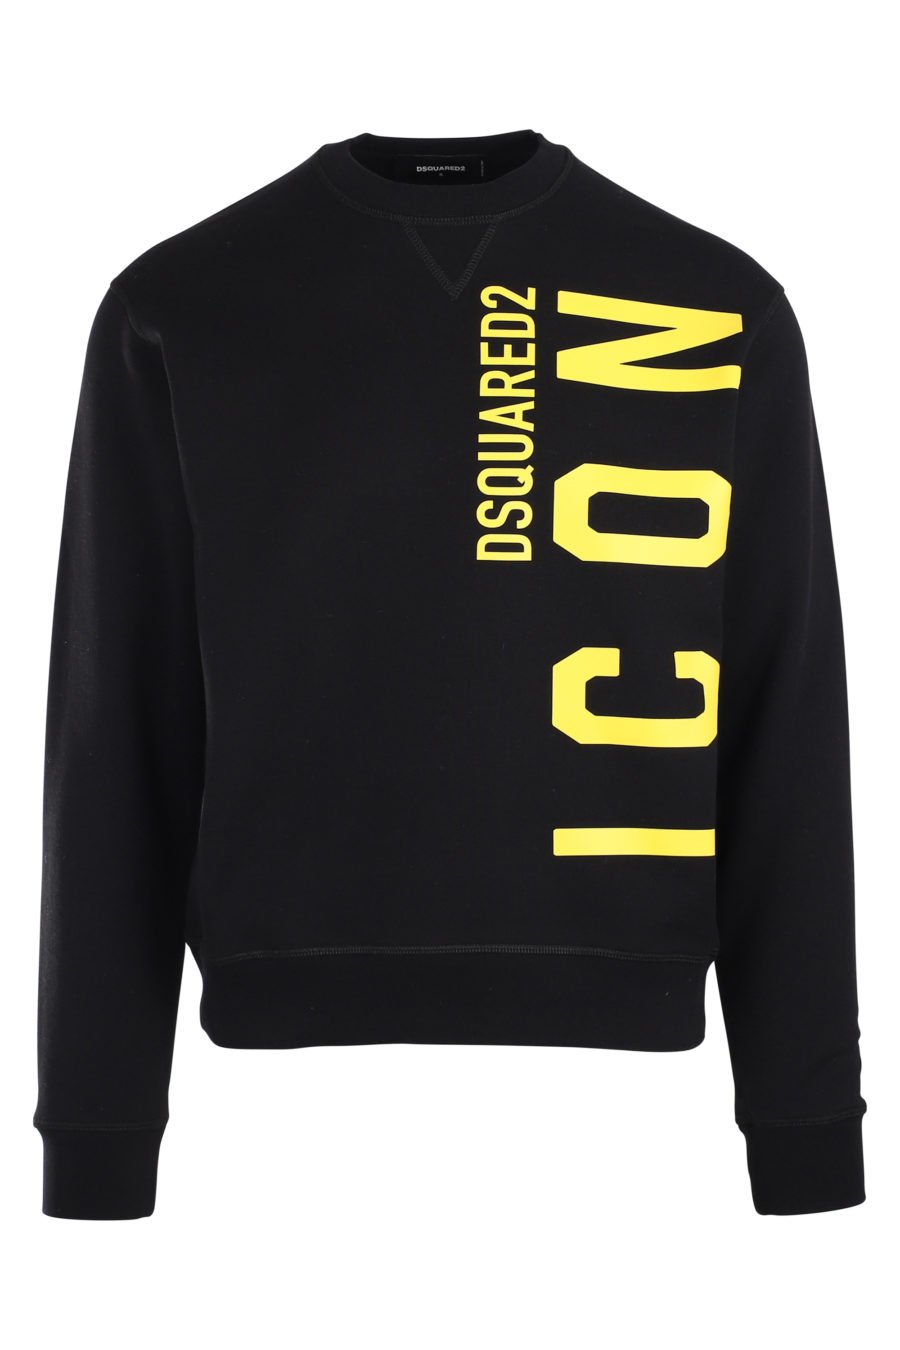 Black sweatshirt with yellow vertical "icon" logo - IMG 9889